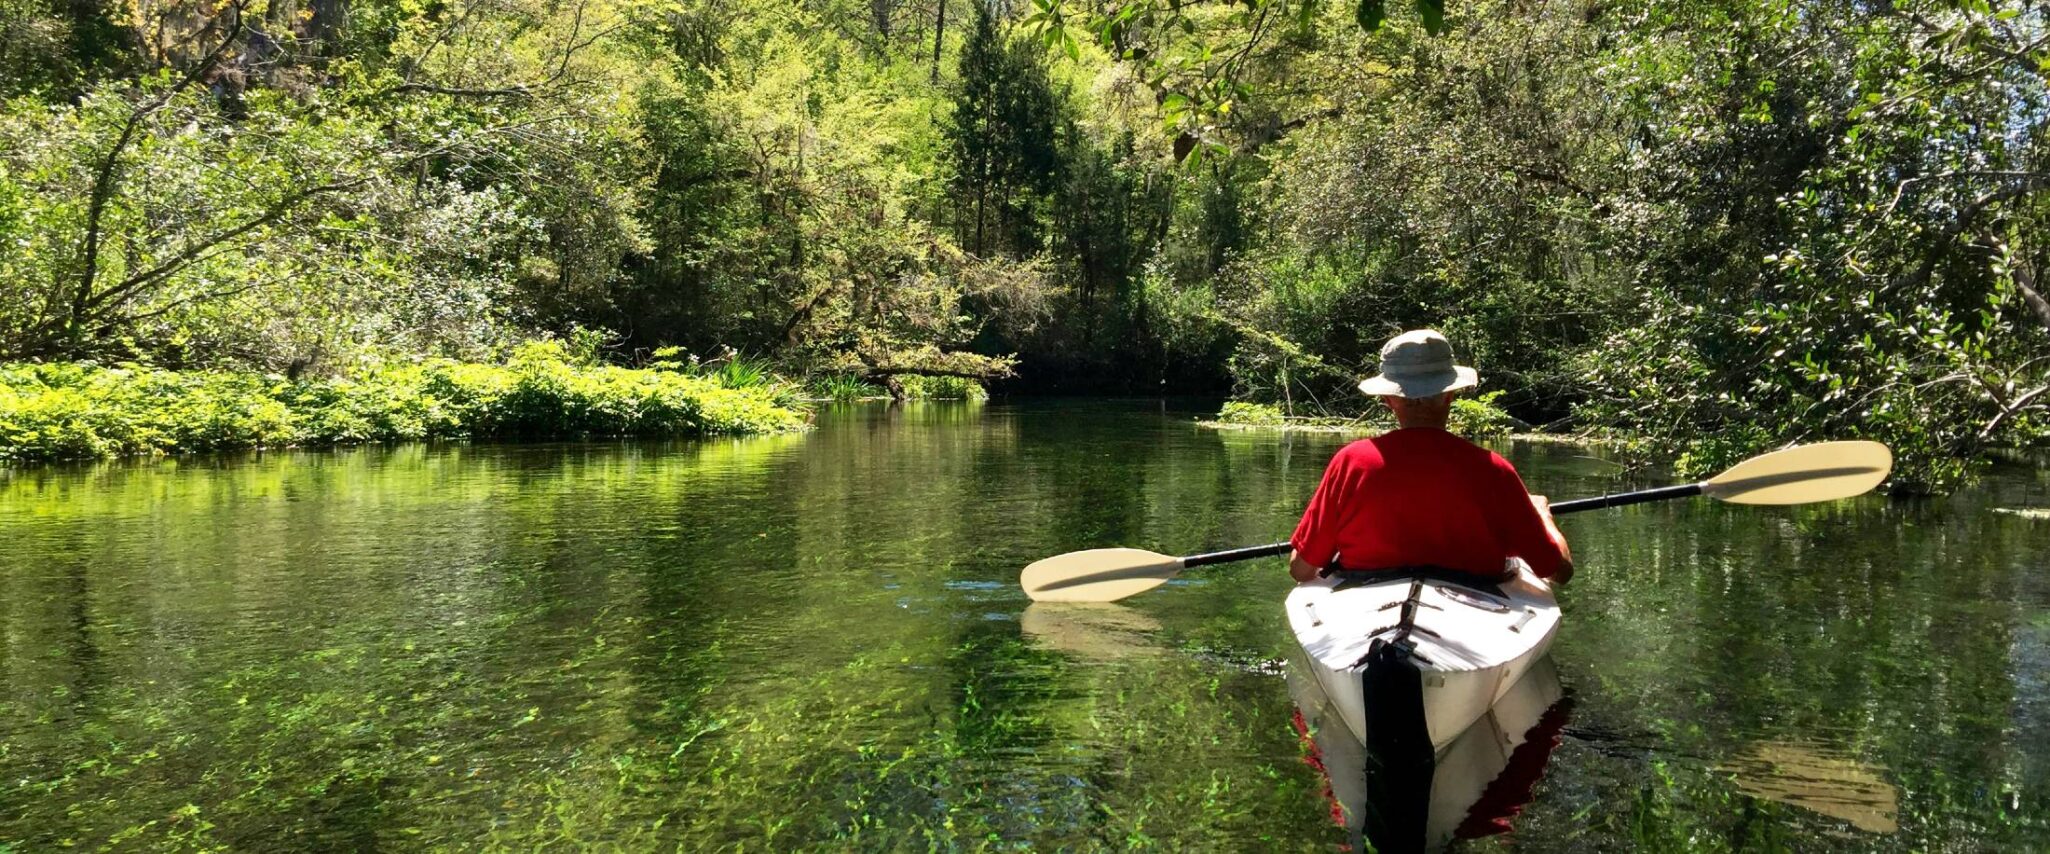 senior kayaking in florida